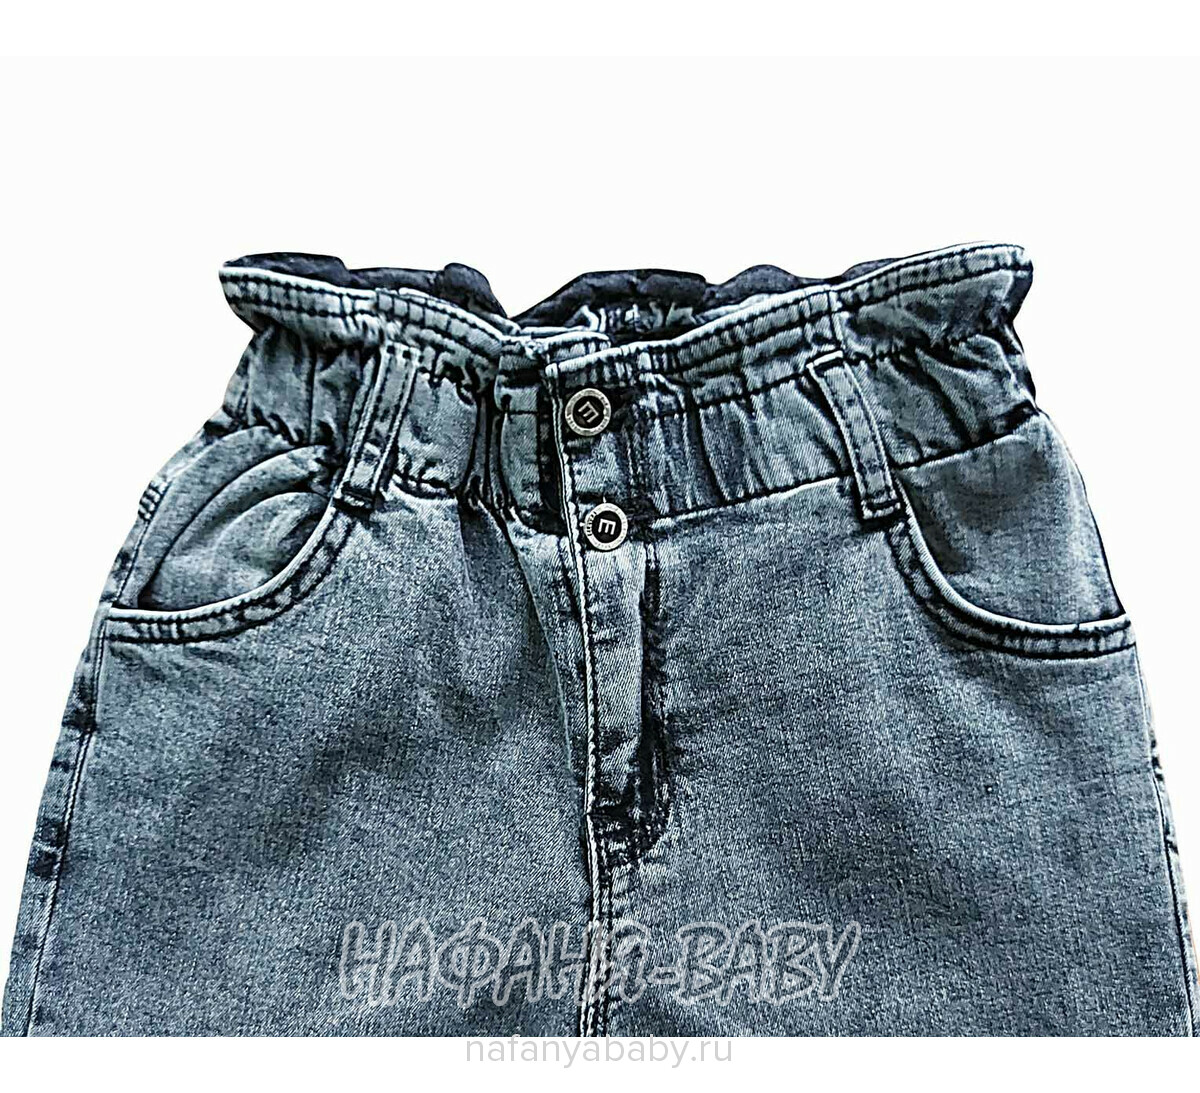 Джинсы подростковые ELEYSA Jeans арт: 6106, 8-12 лет, цвет черный, оптом Турция